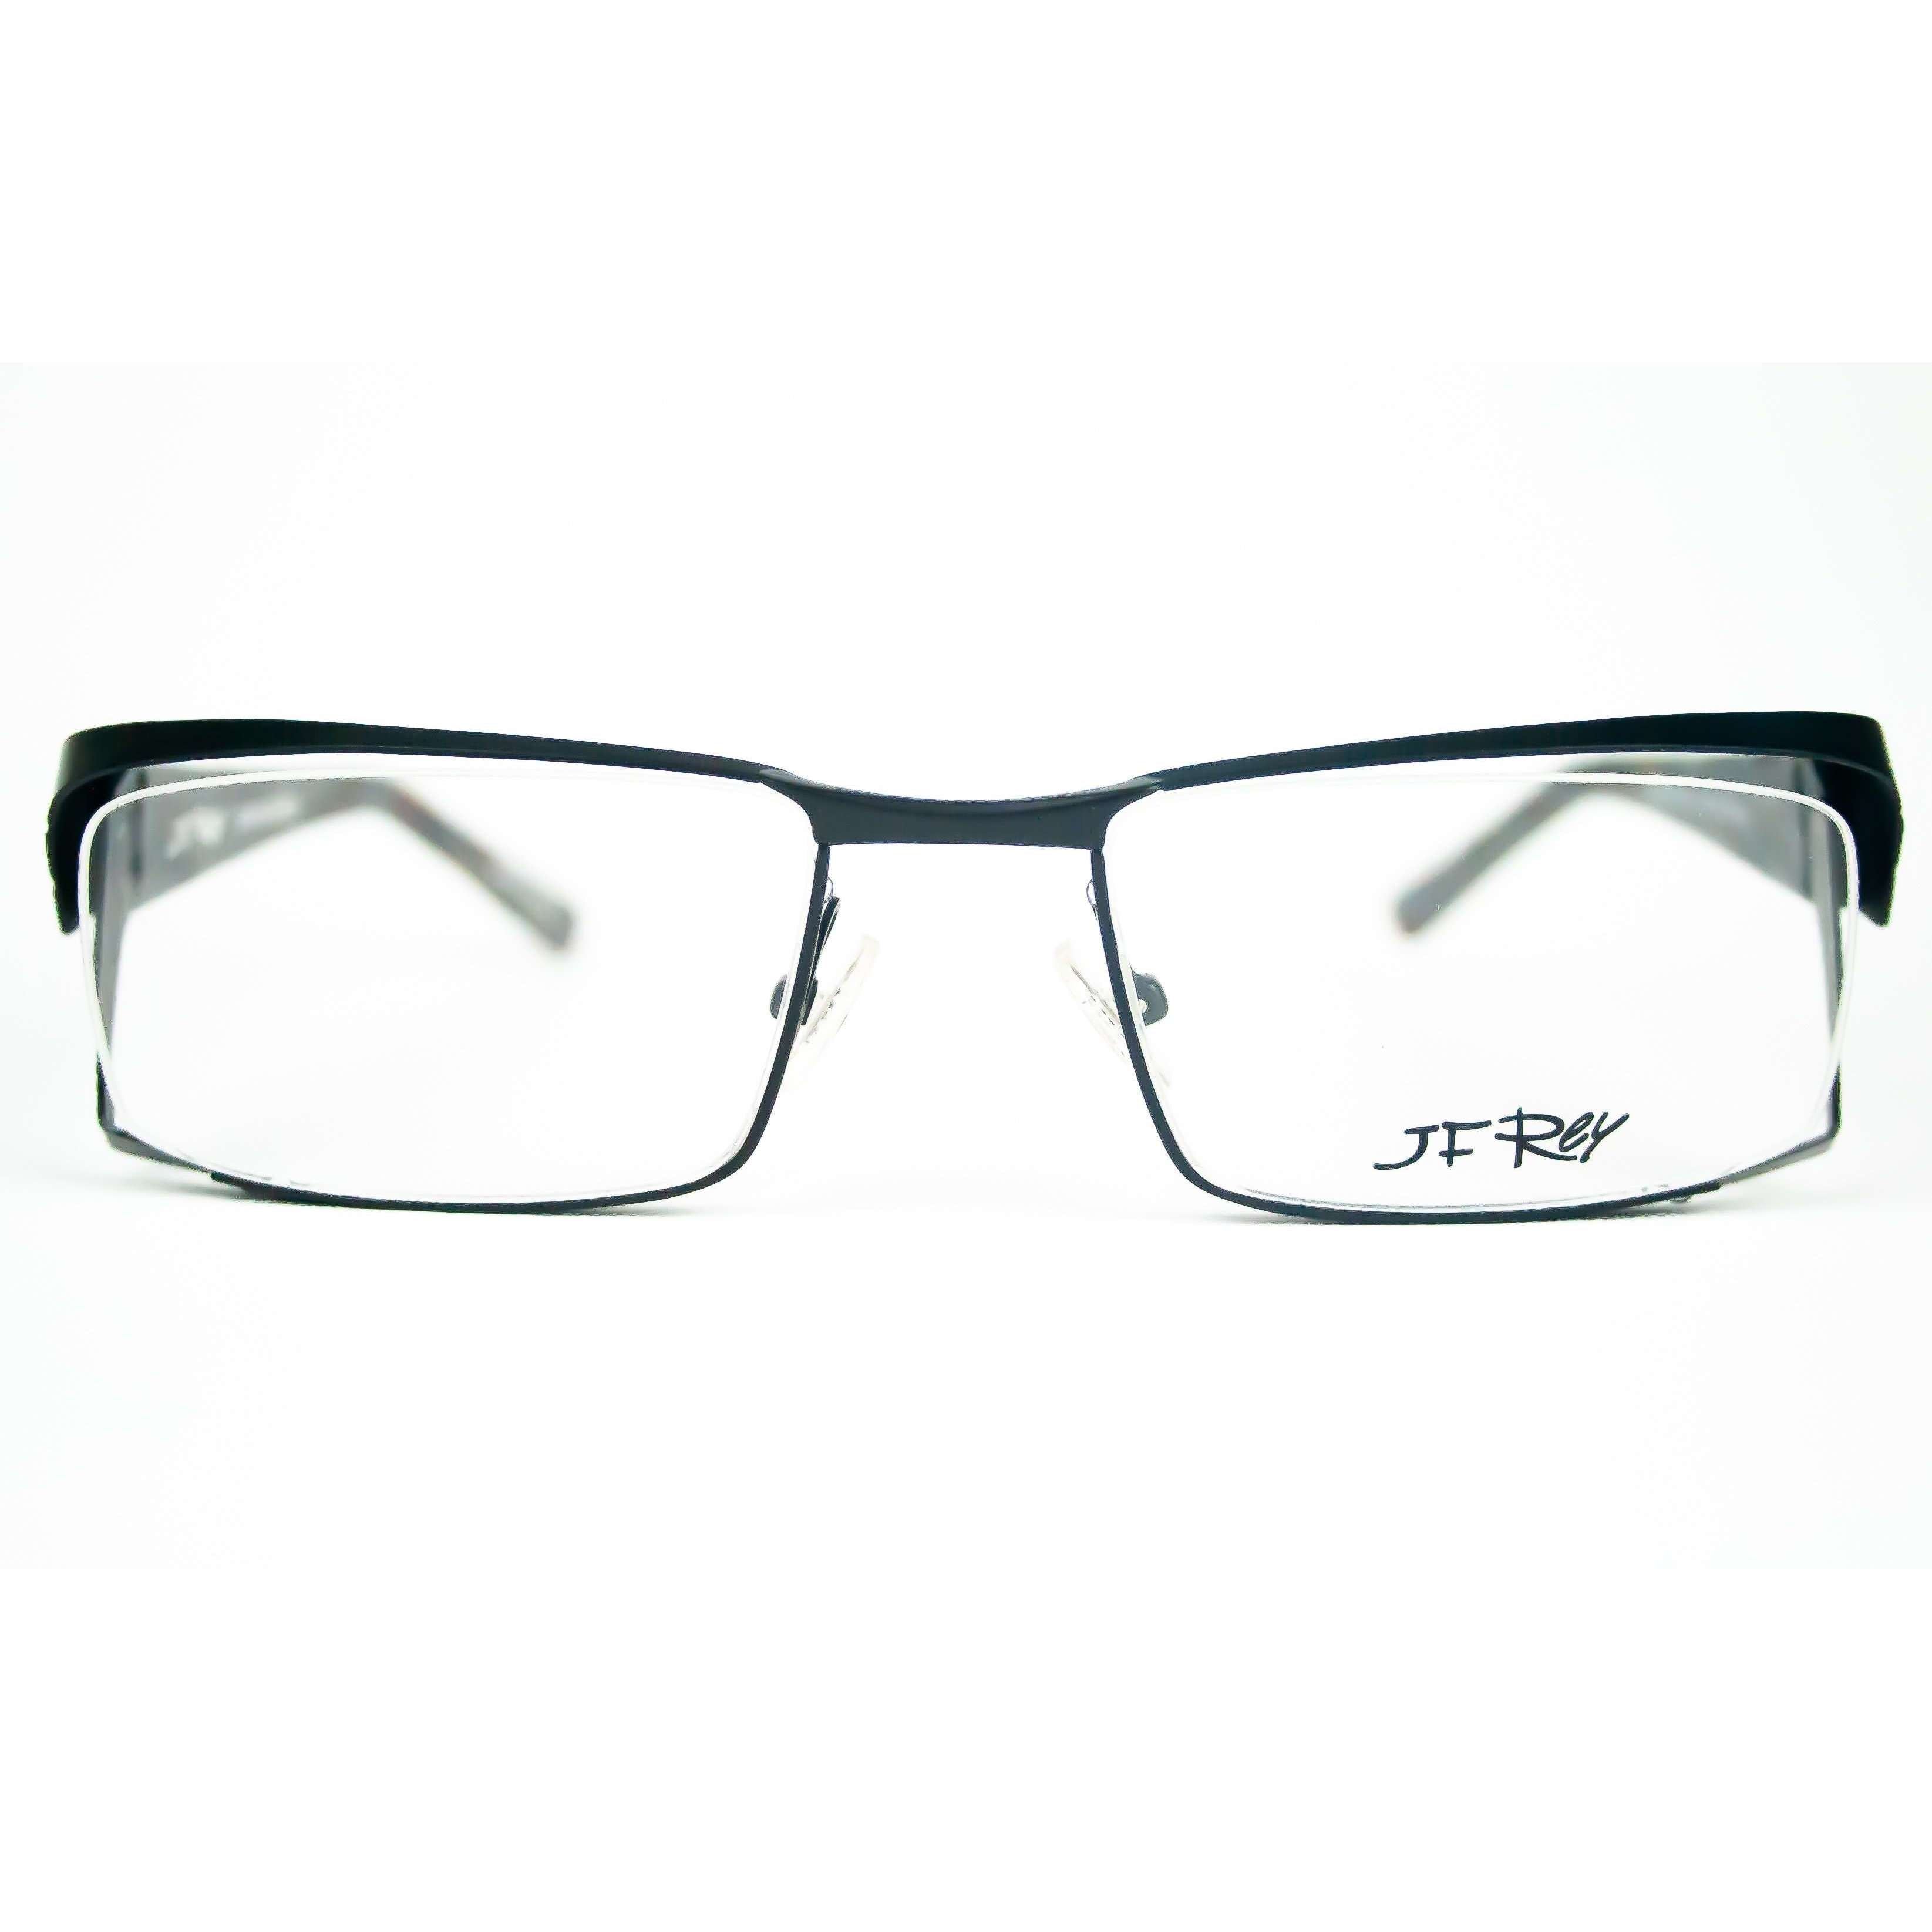 JF Rey Model 2398 Black Rectangular Glasses